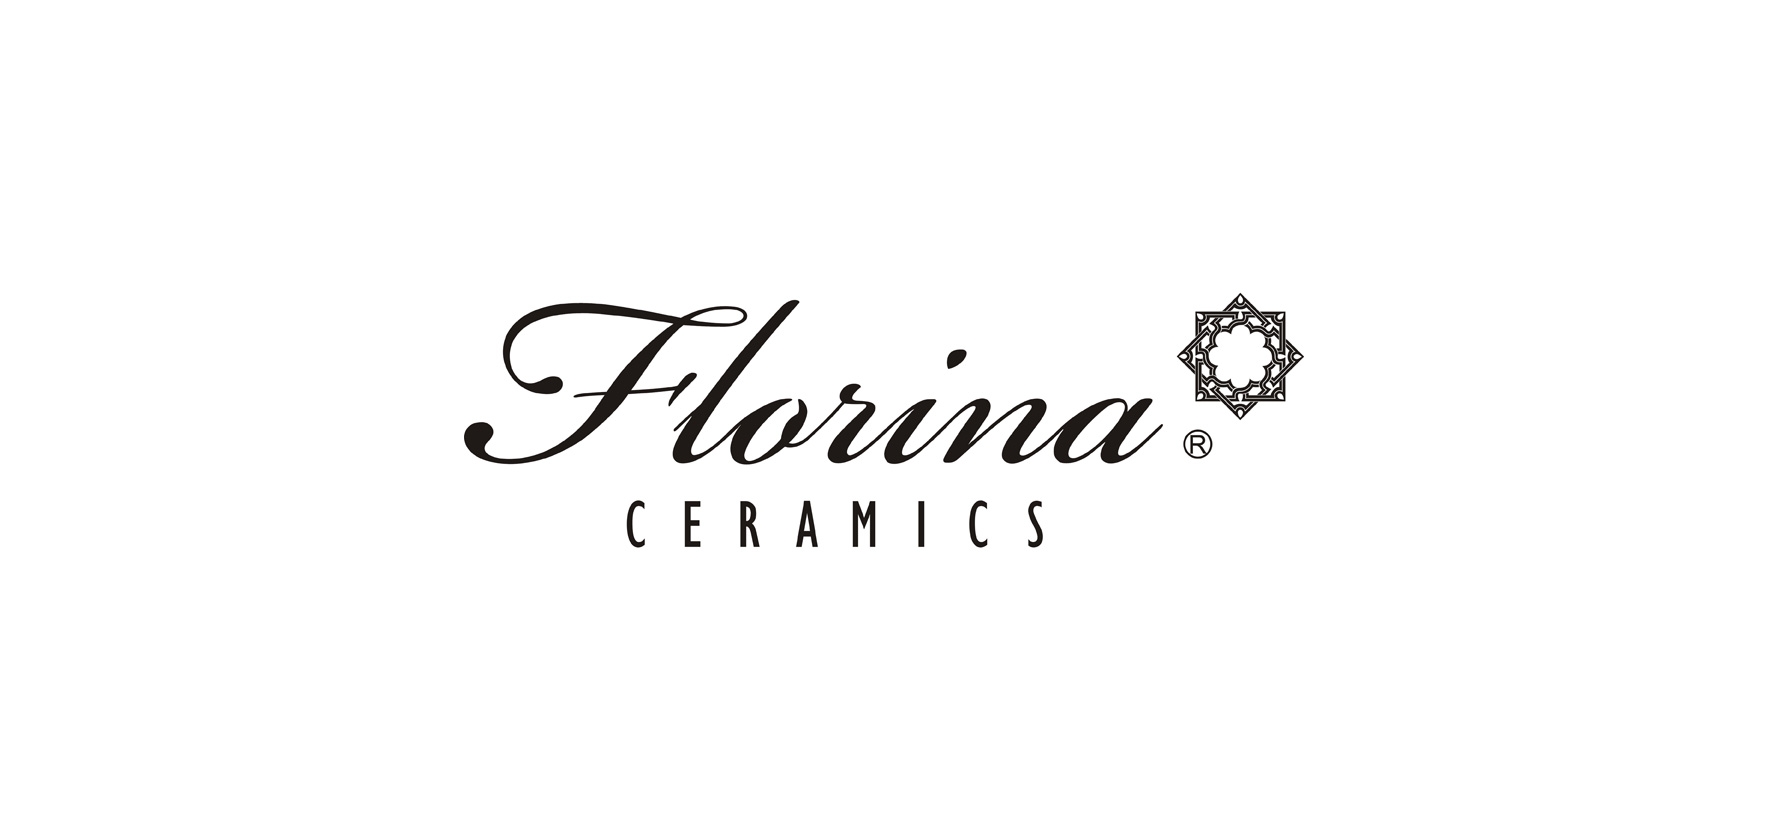 费罗娜瓷砖是什么牌子_费罗娜瓷砖品牌怎么样?